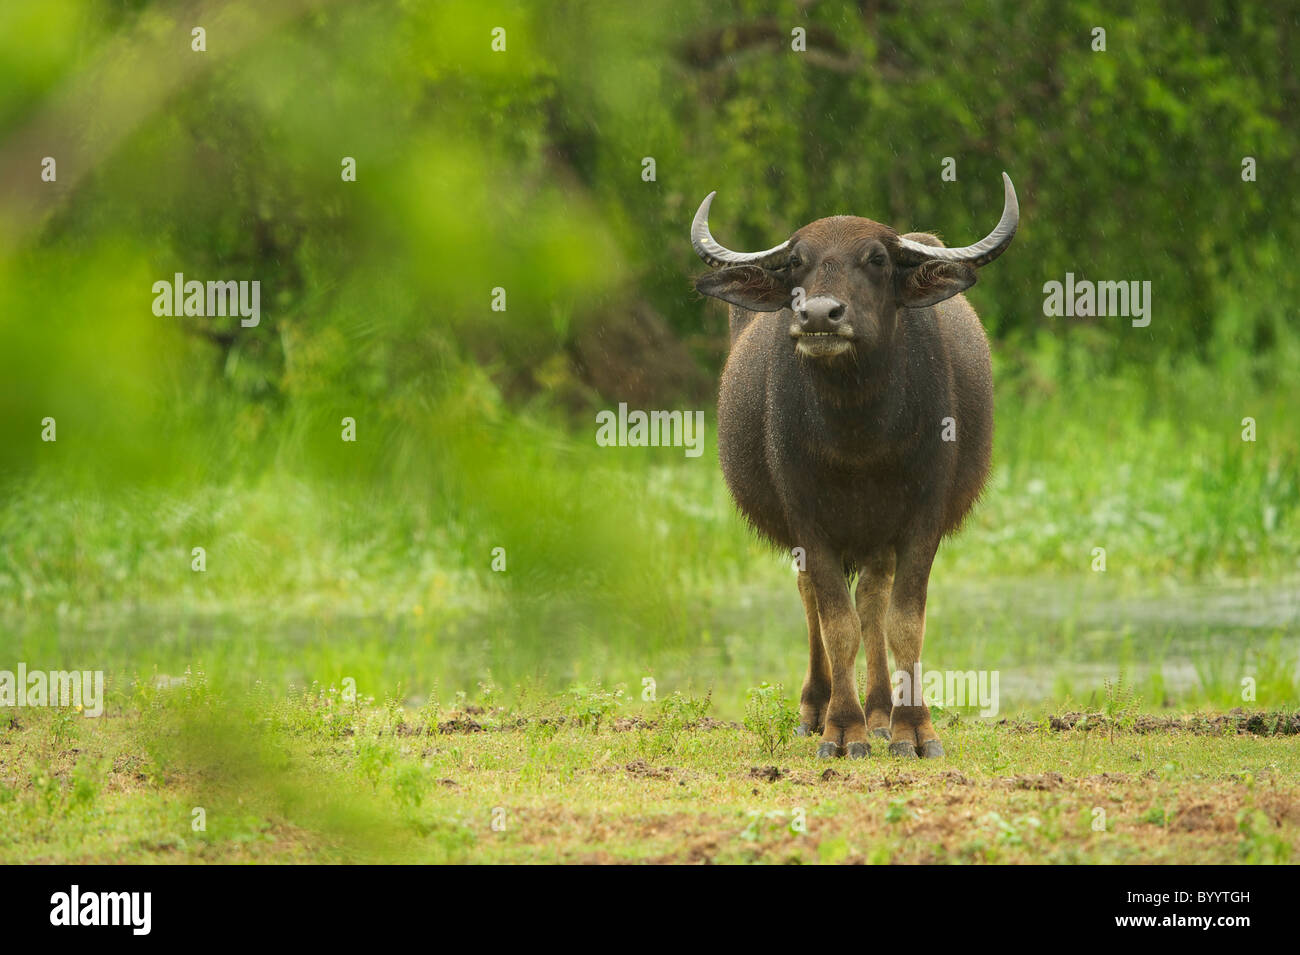 A wild buffalo in rain Yala National Park Sri Lanka Stock Photo